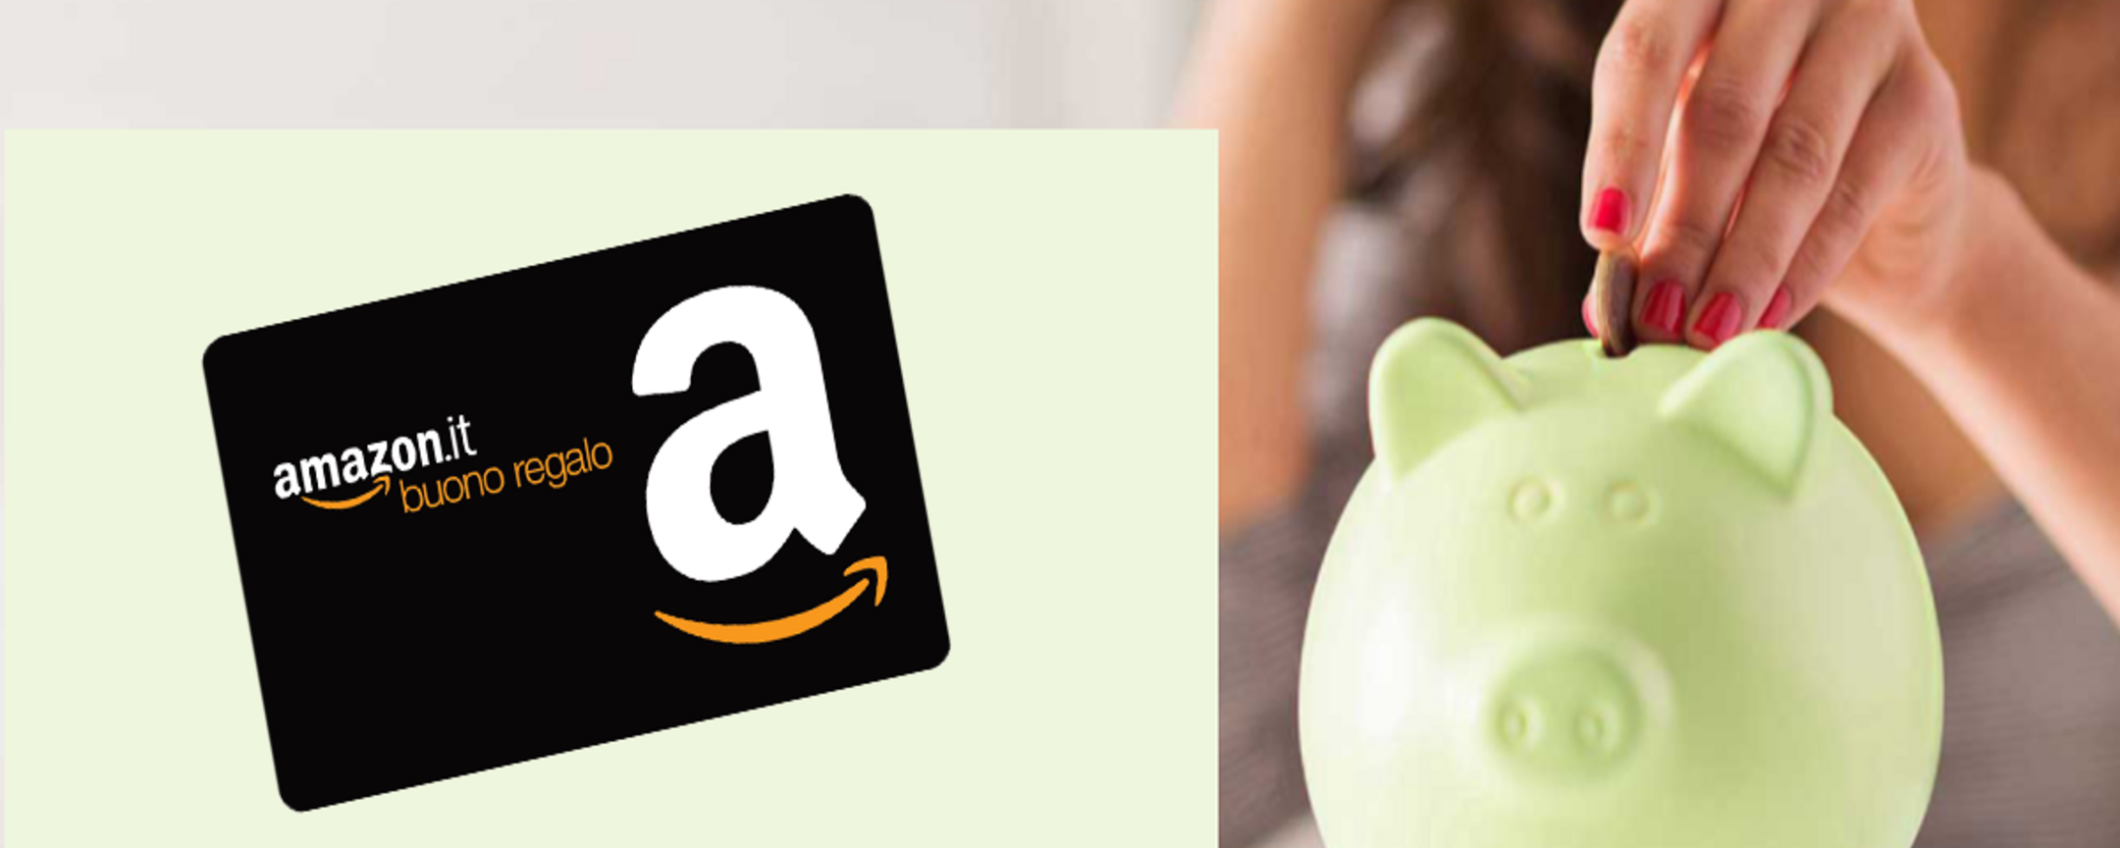 Buono Amazon fino a €250 con Credit Agricole! Scopri l'OFFERTONA prima che sia troppo tardi!